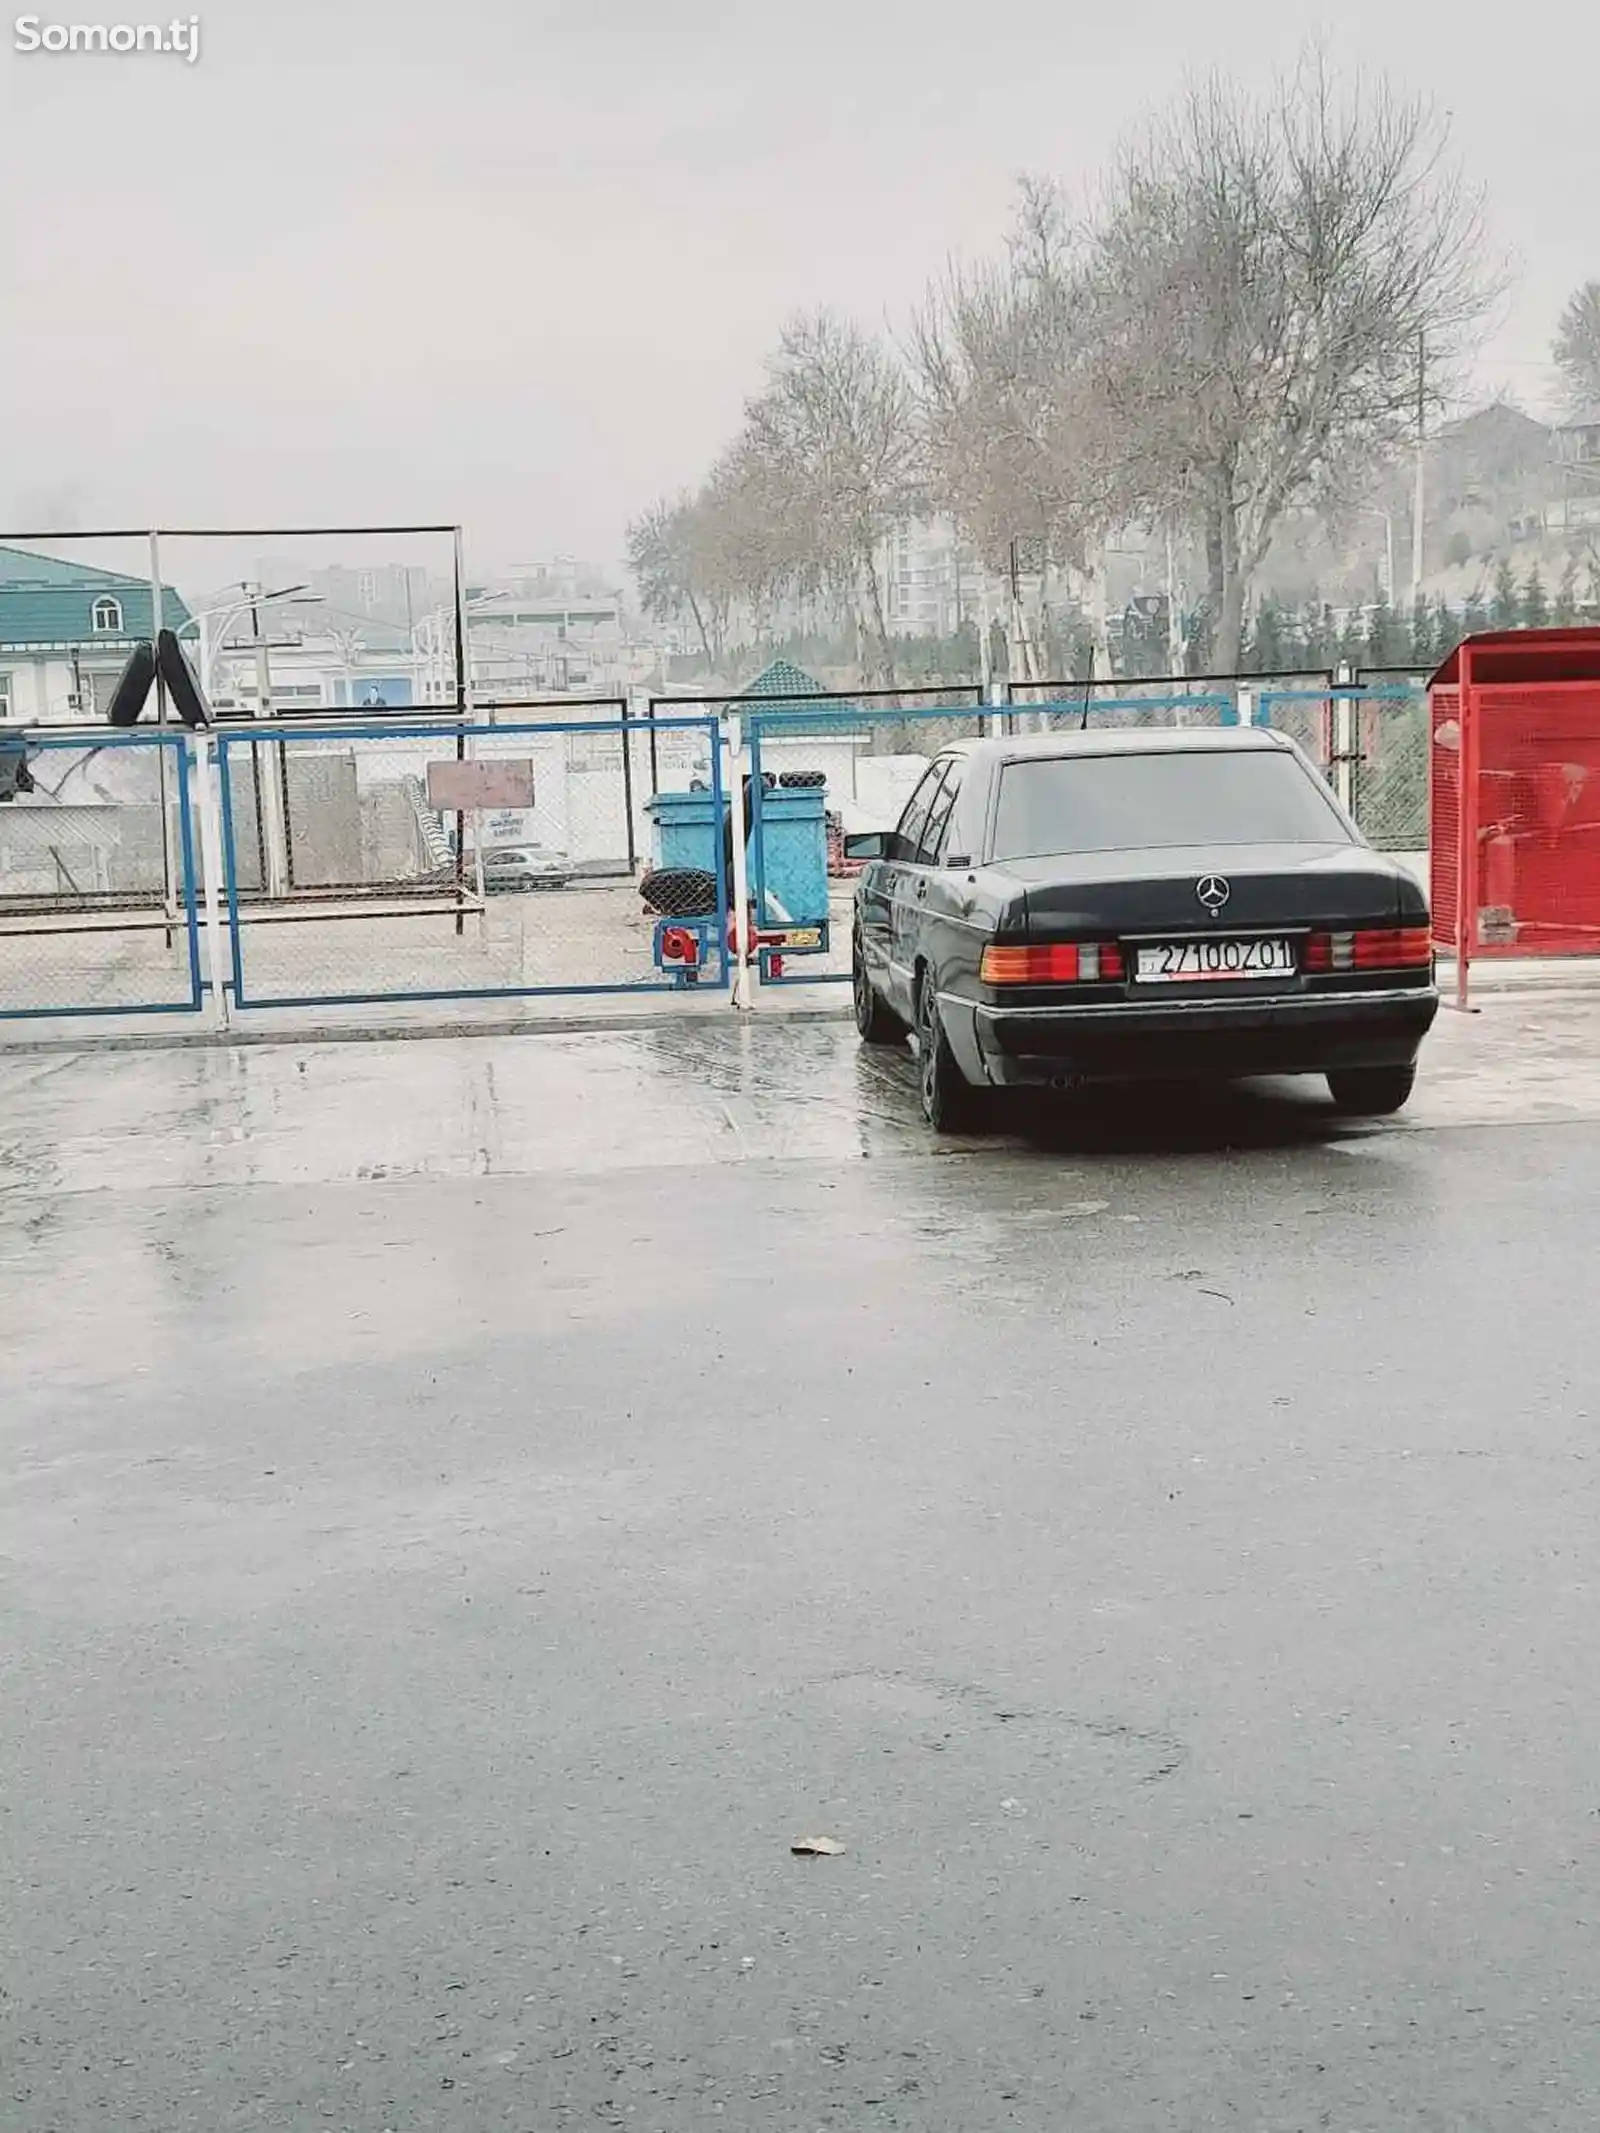 Mercedes-Benz W201, 1990-8